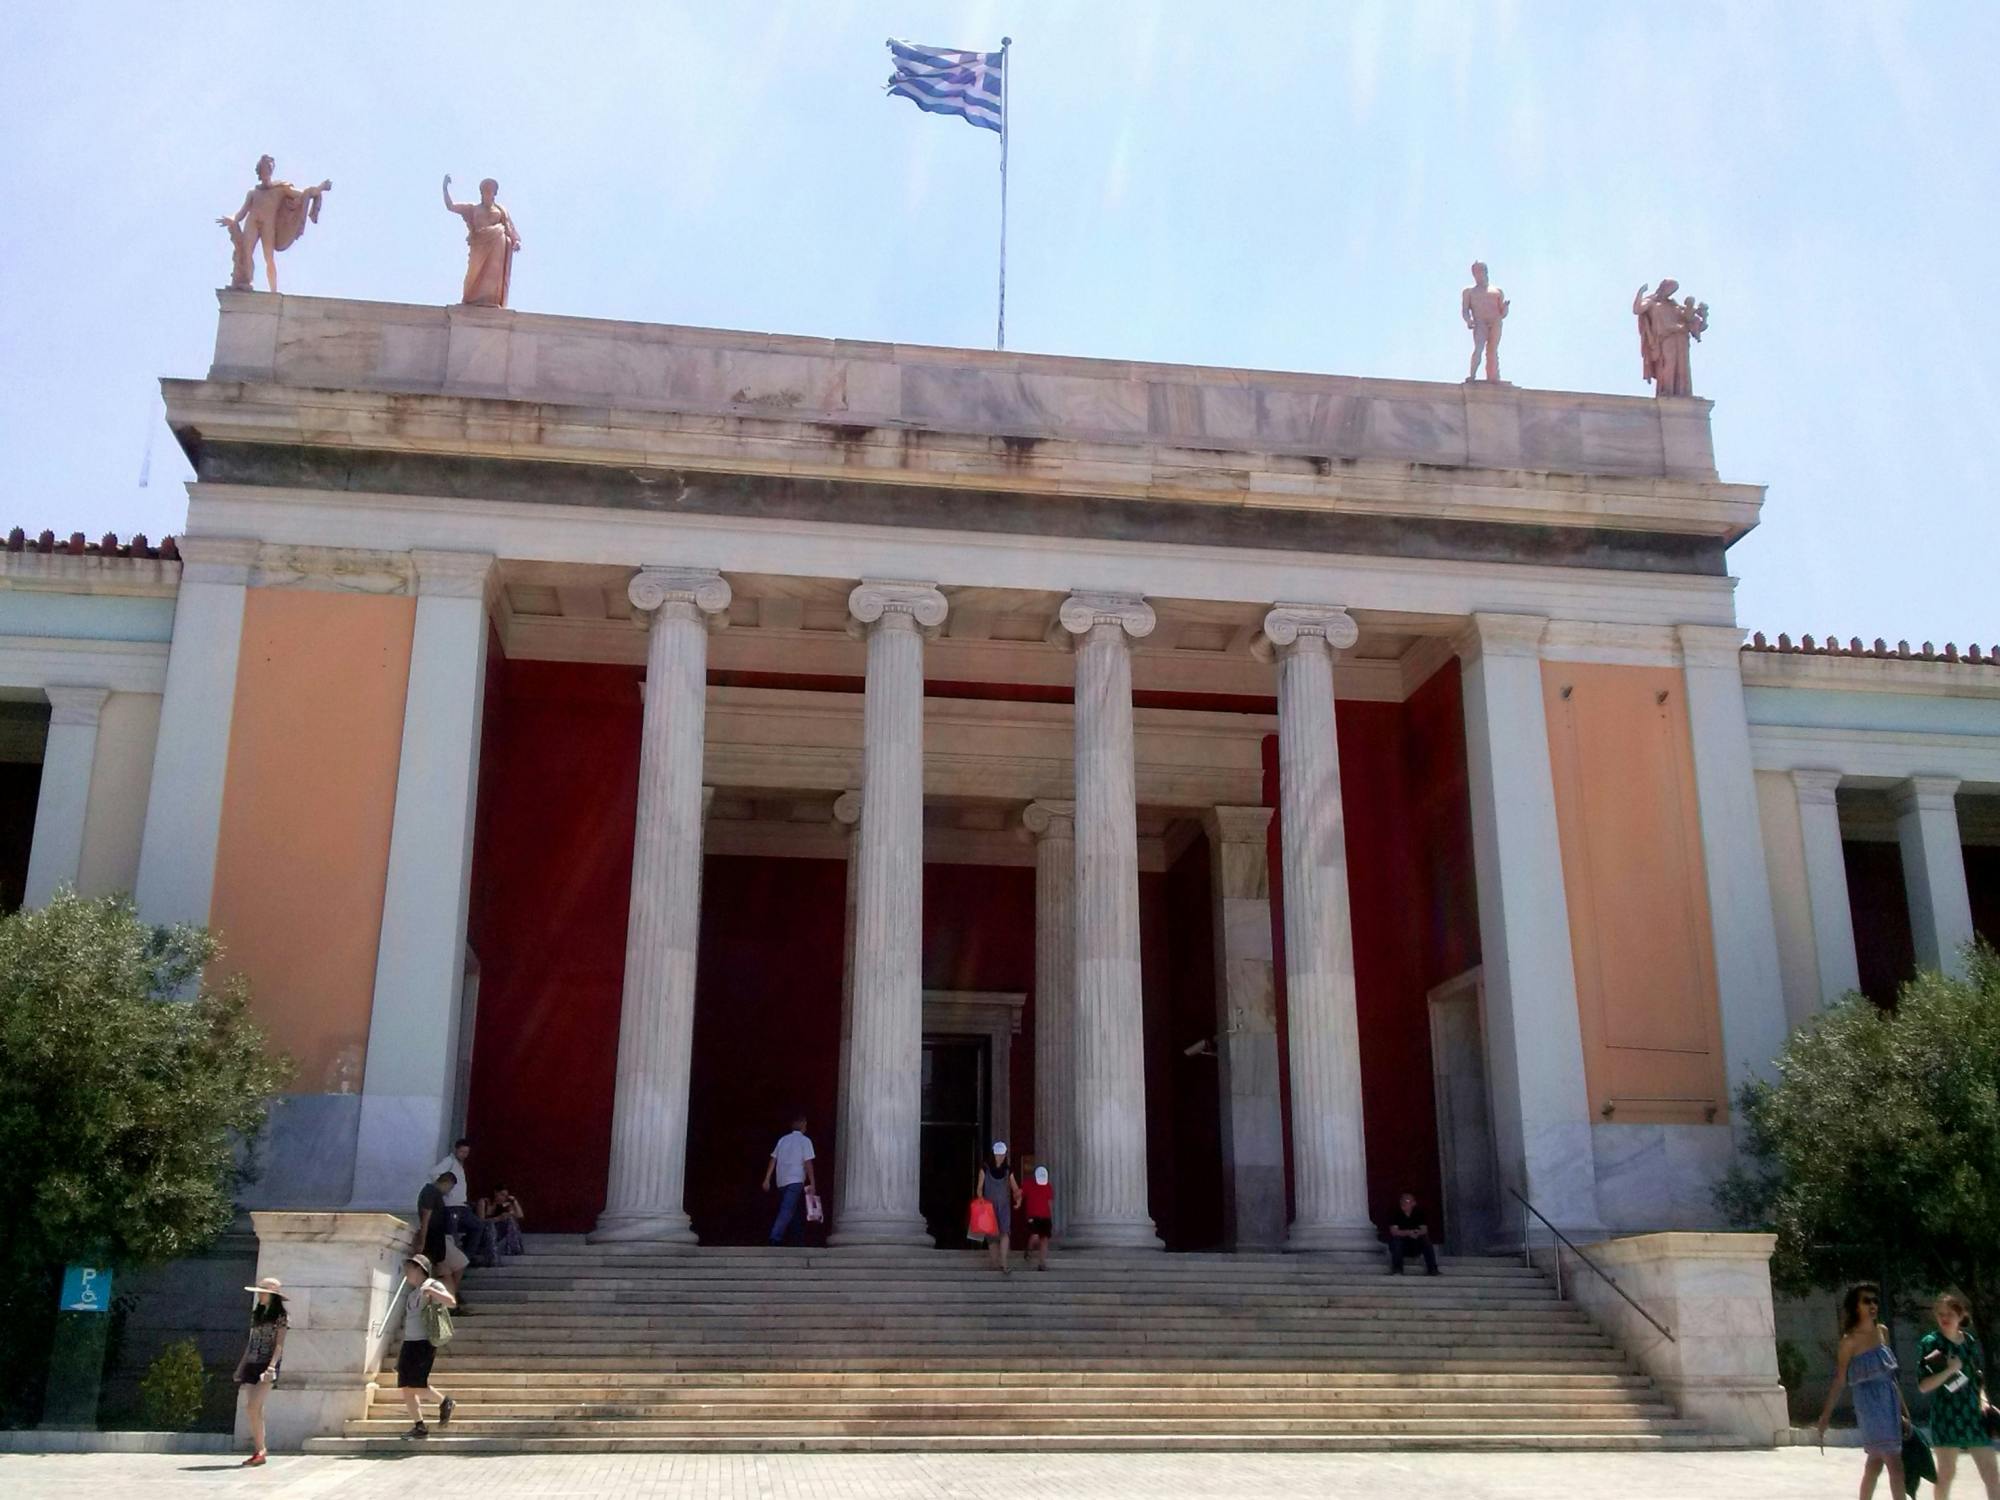 Boleto de entrada al Museo Arqueológico Nacional de Atenas